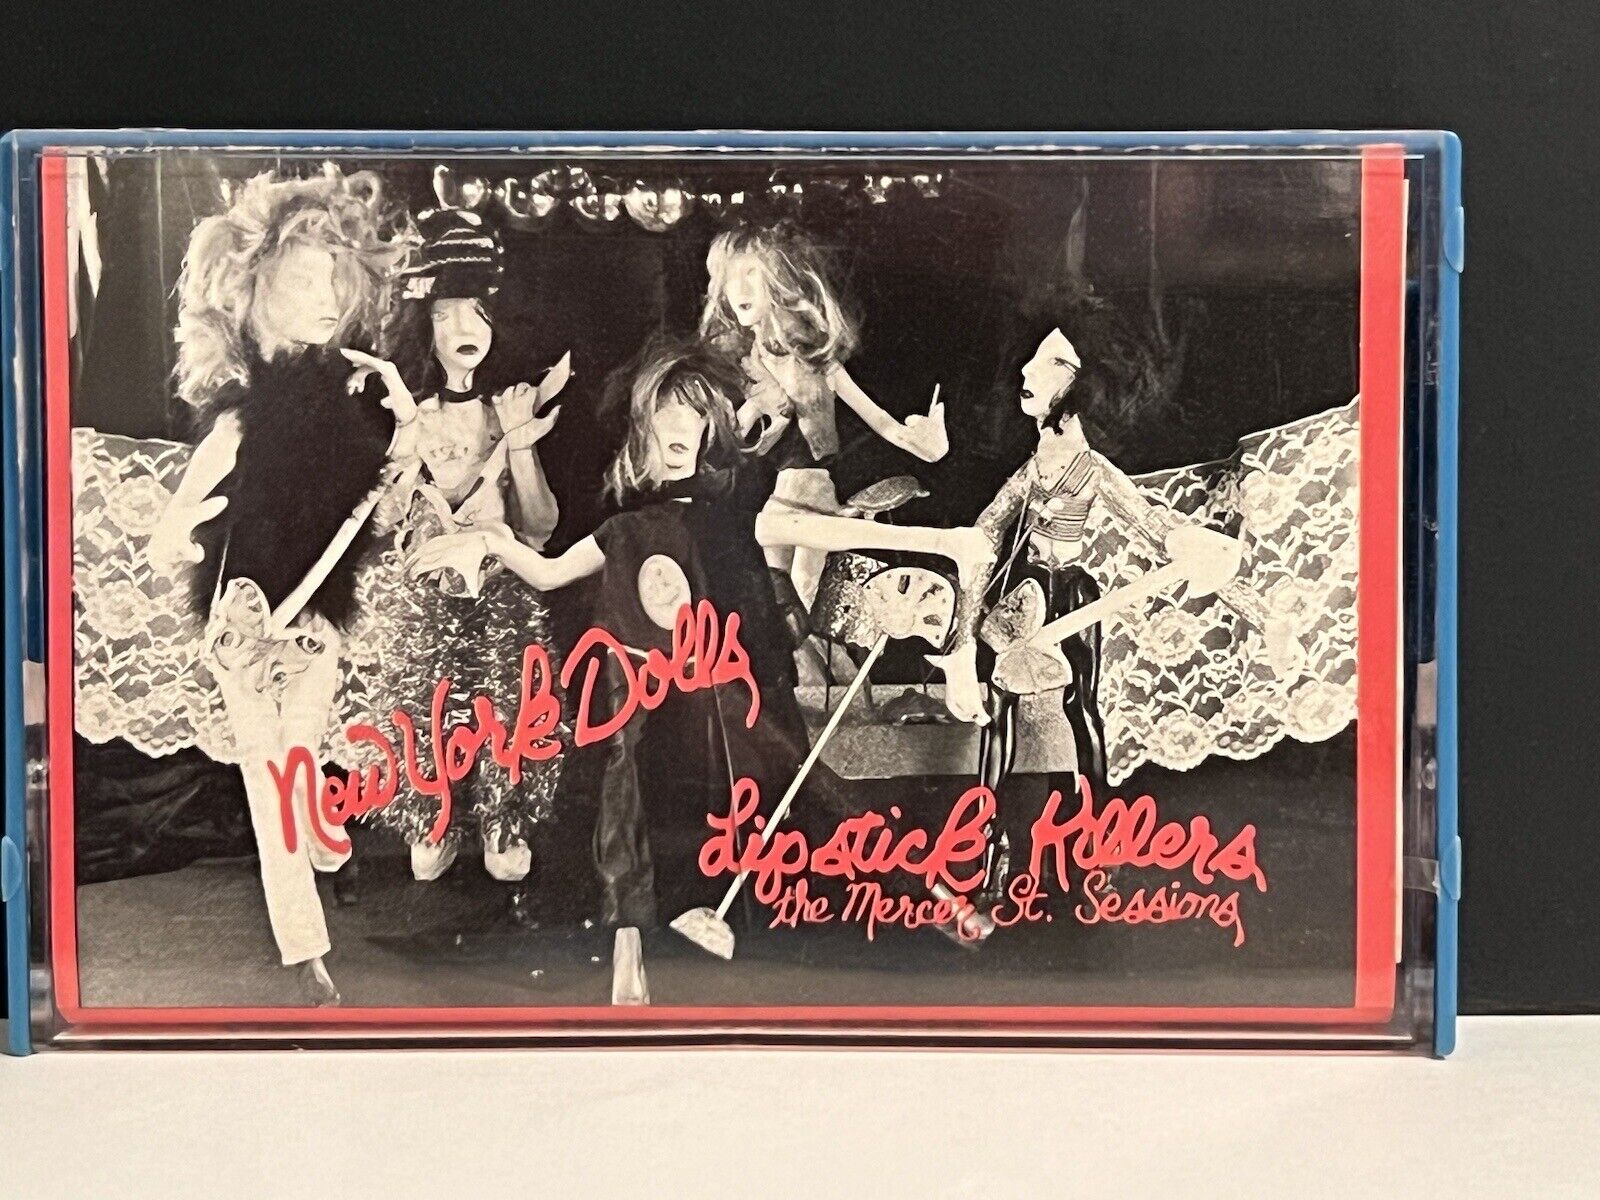 VTG 1982 NEW YORK DOLLS Lipstick Killers The Mercer Street Session ROIR Cassette